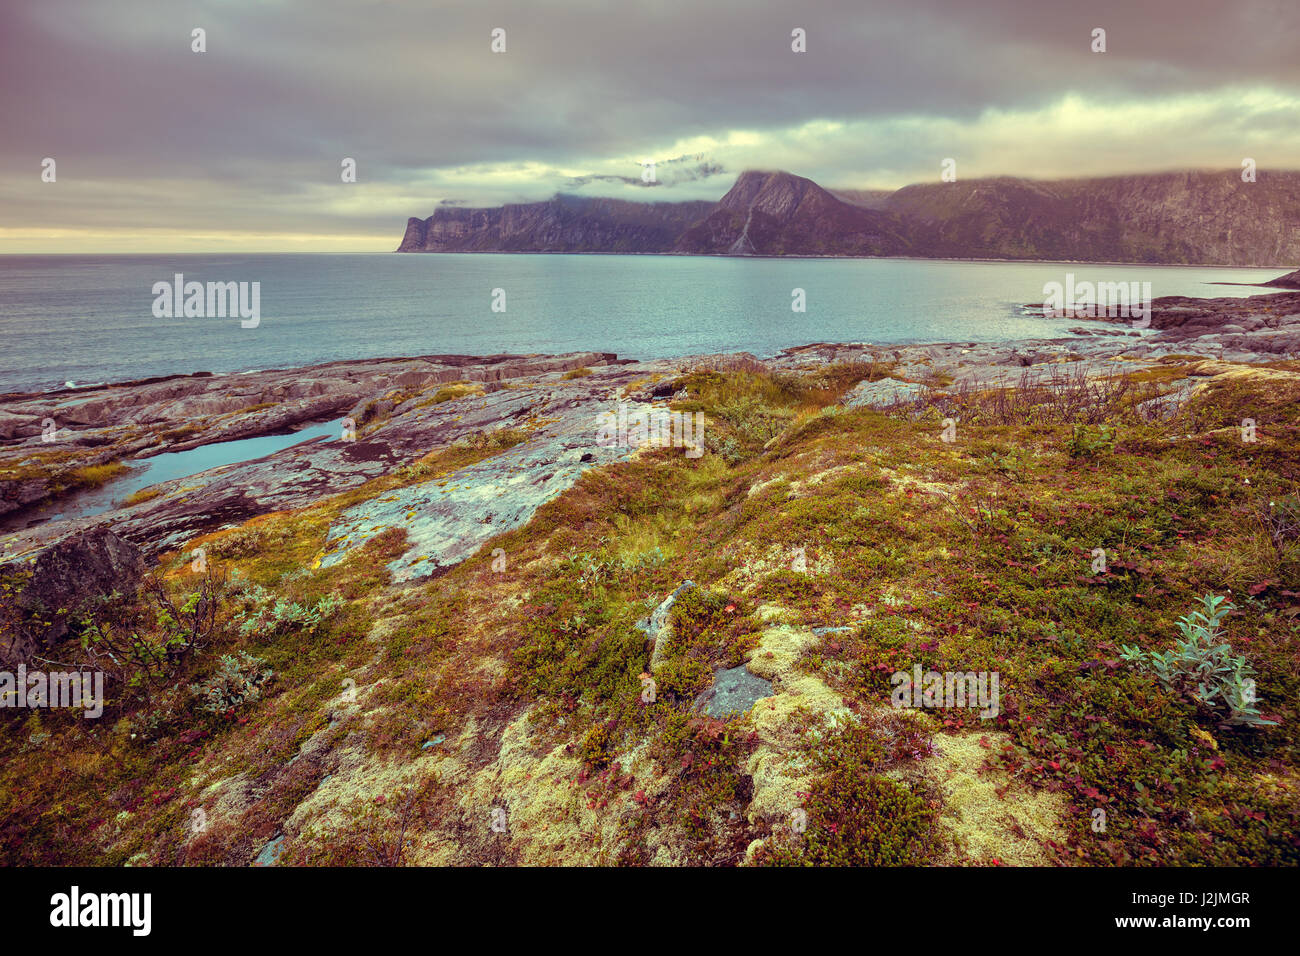 Fjord, plage rocheuse au coucher du soleil, la magie de la nature sauvage de la Norvège. L'île de Senja. Magnifique baie. Banque D'Images